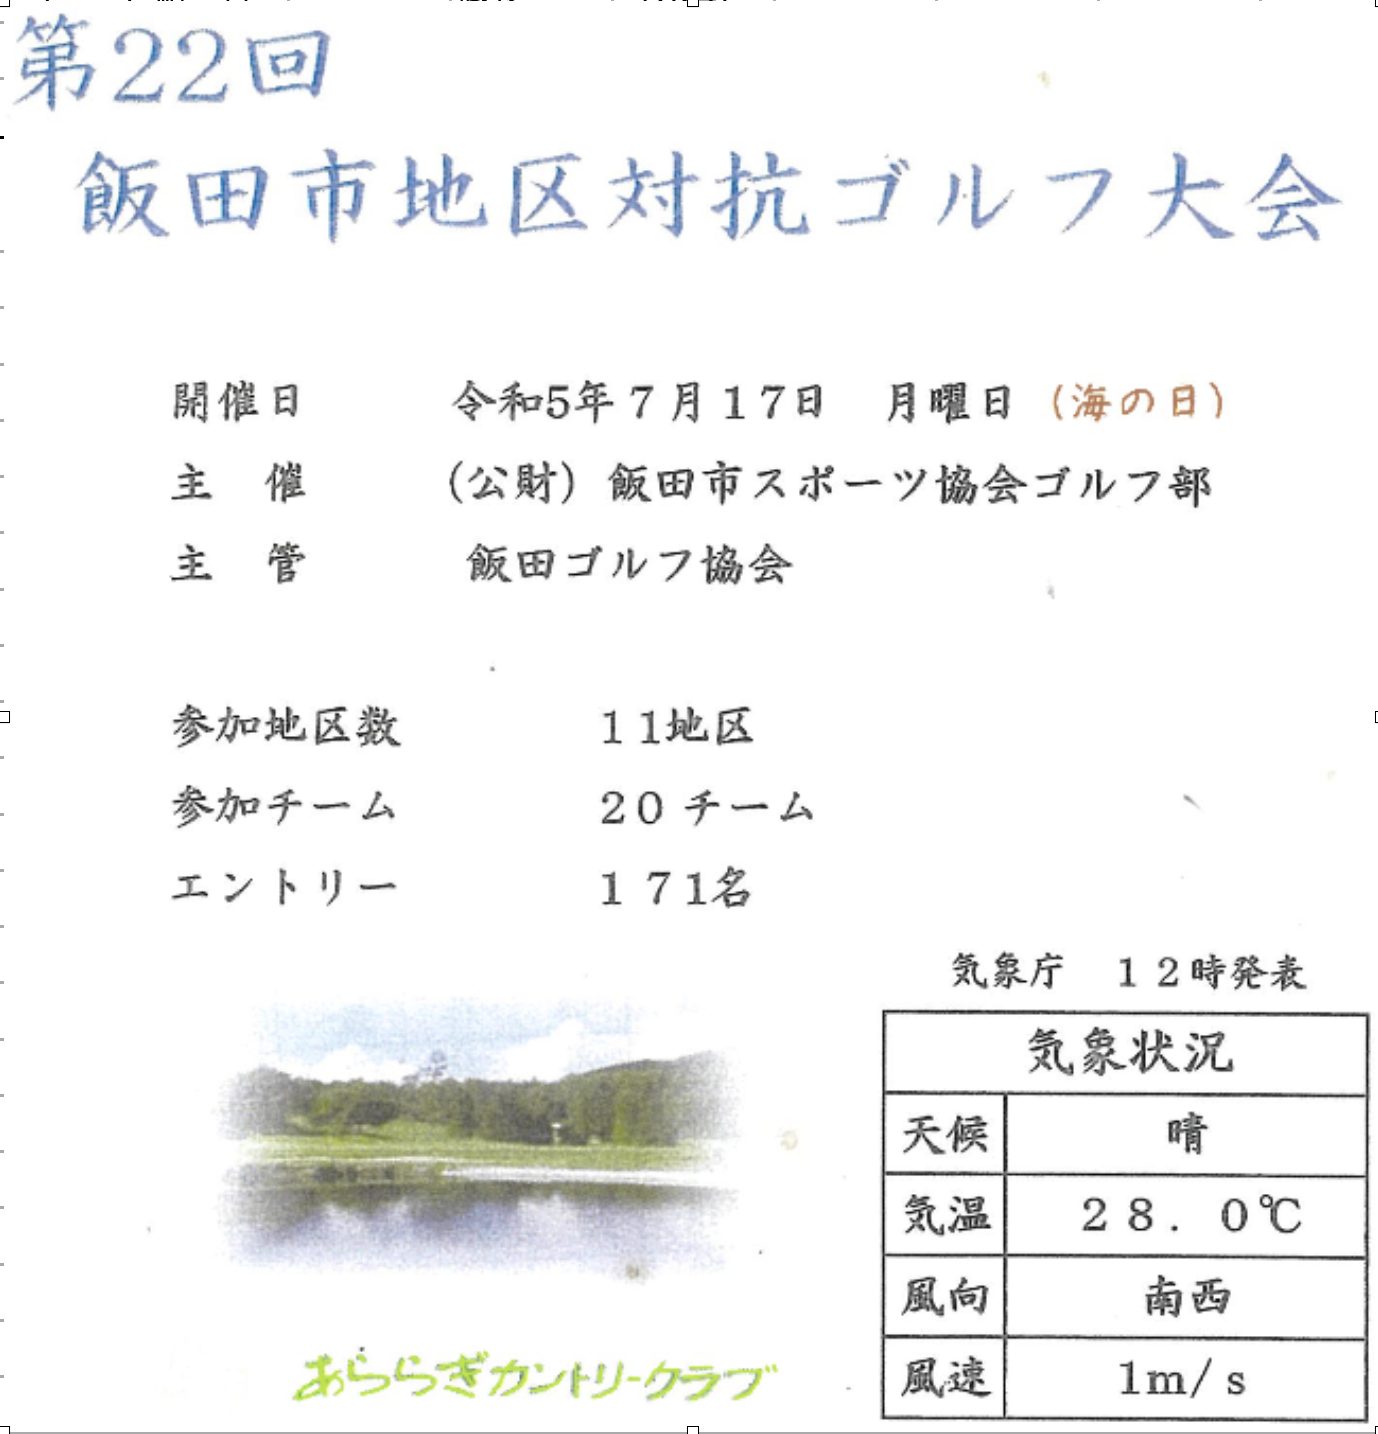 【イベント】第22回飯田市地区対抗ゴルフ大会　「三穂チーム」初めての優勝